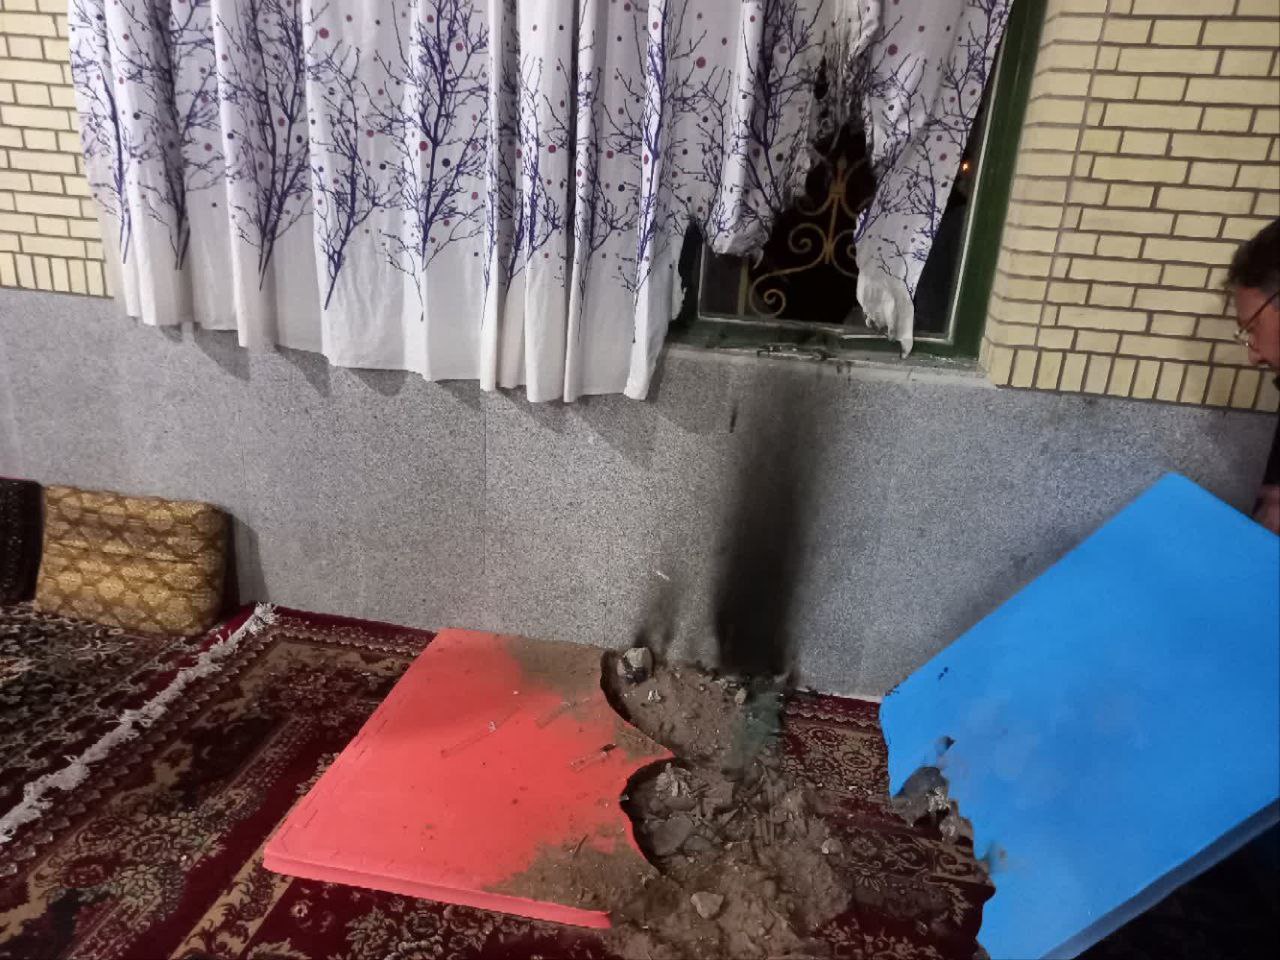 جوان زرندی آتش مسجد را خاموش کرد